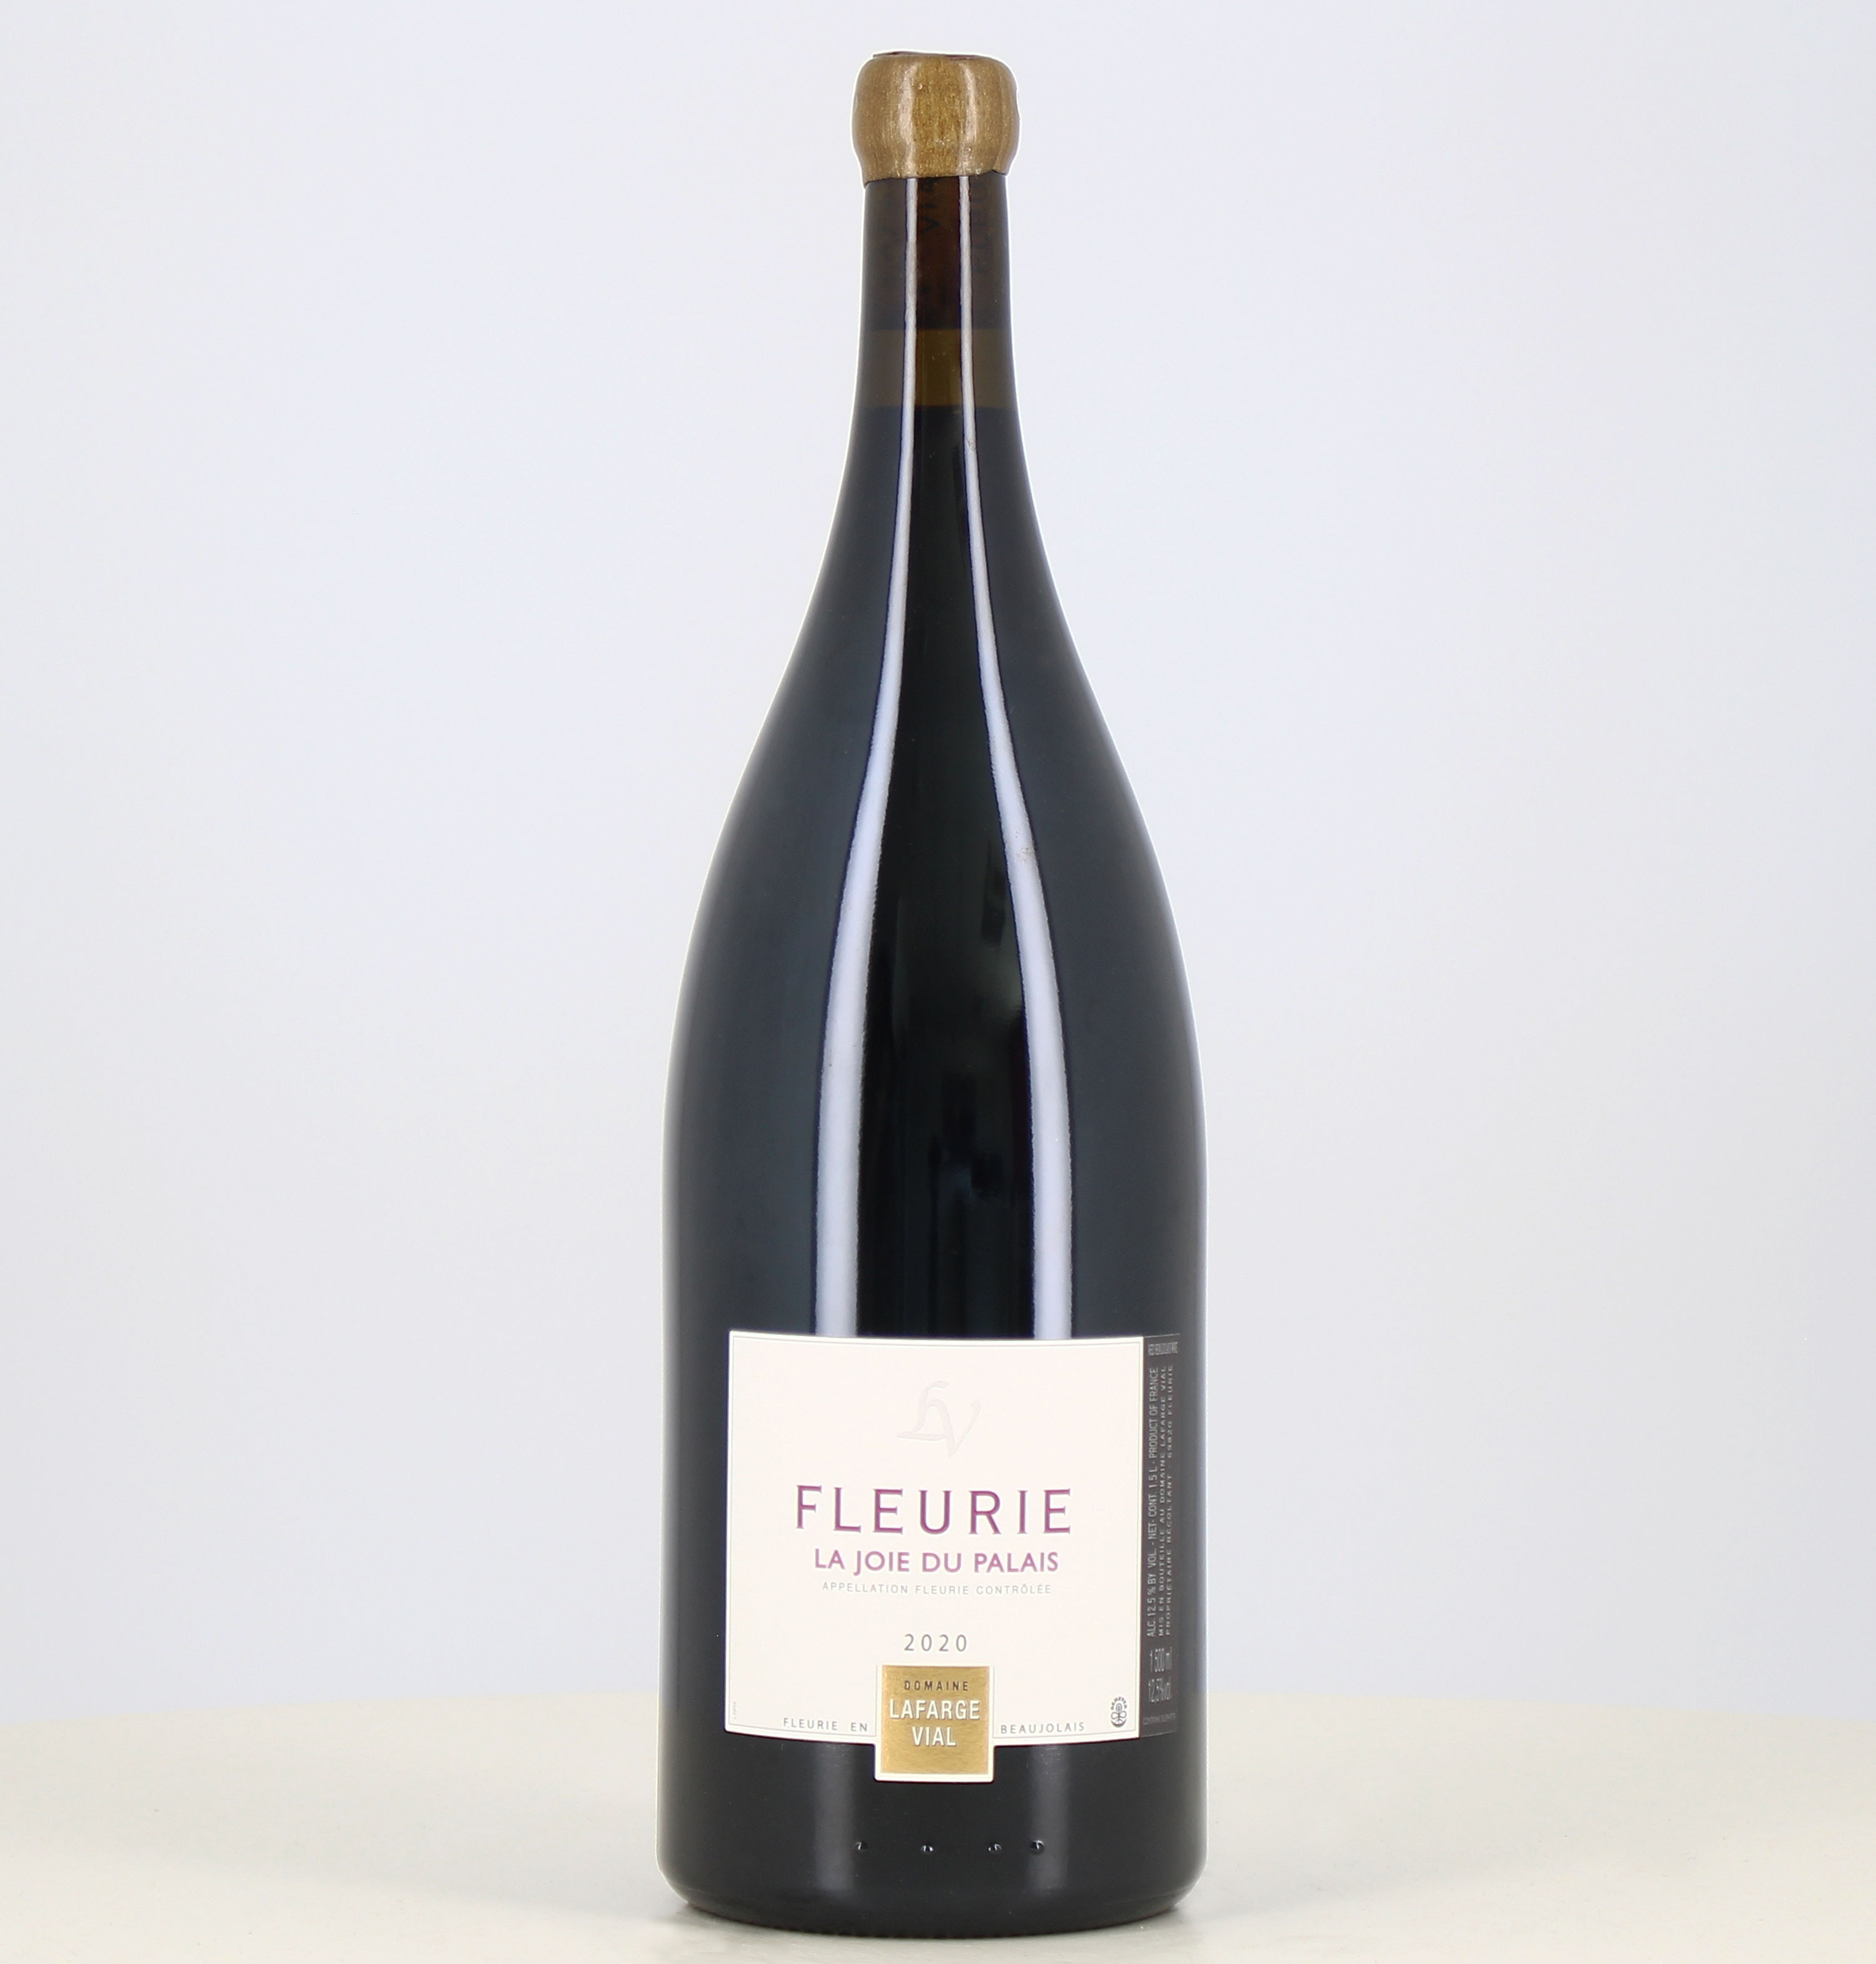 Magnum red wine Fleurie Joie du Palais, Lafarge Vial estate 2020 